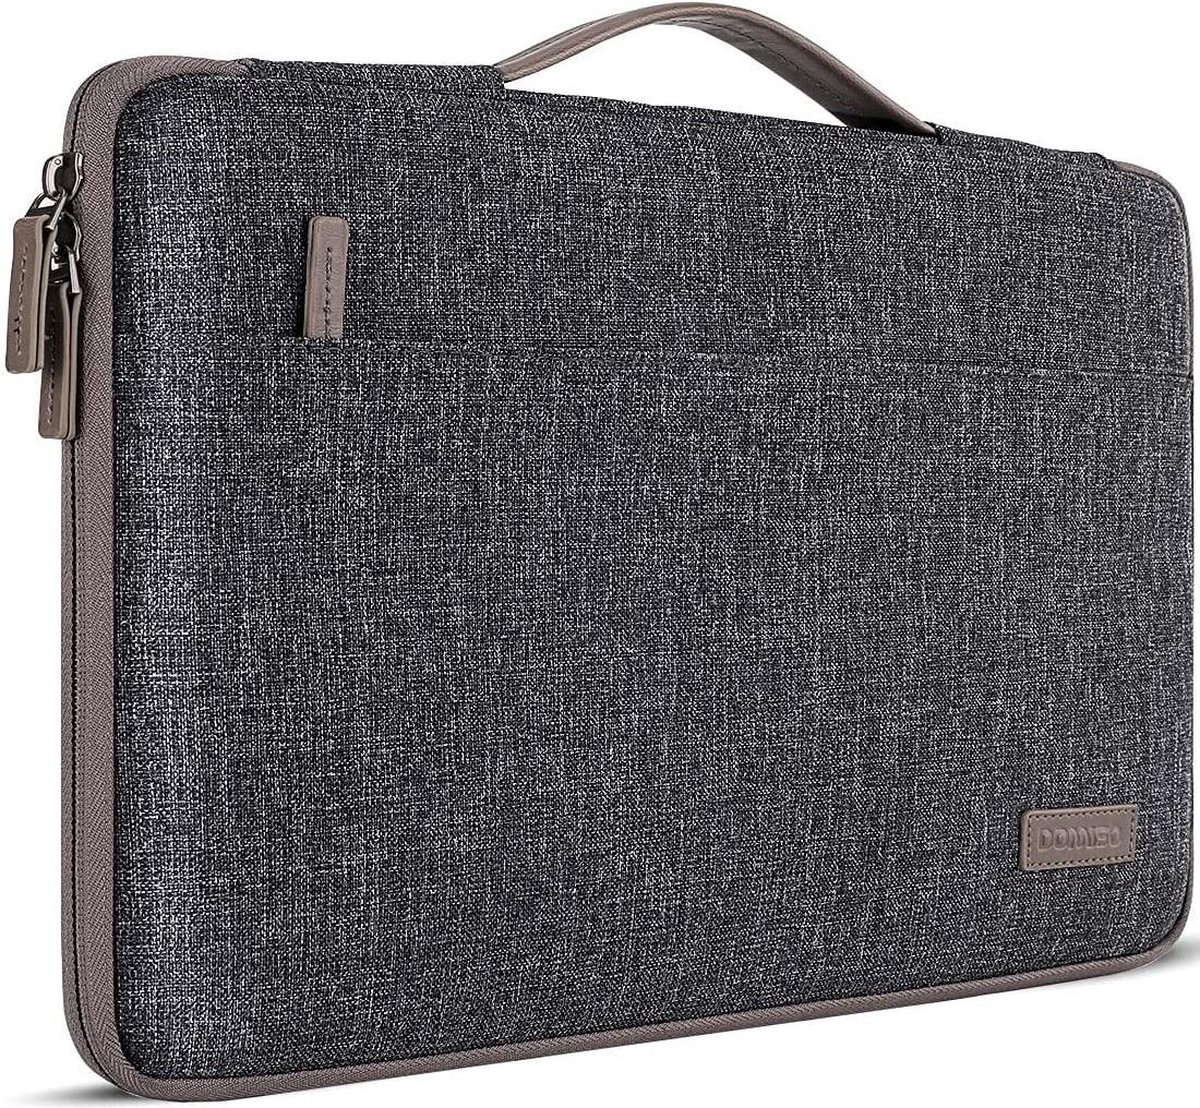 Bellamar 17 inch waterdichte laptophoes laptop sleeve case notebook hoes tas voor 17,3